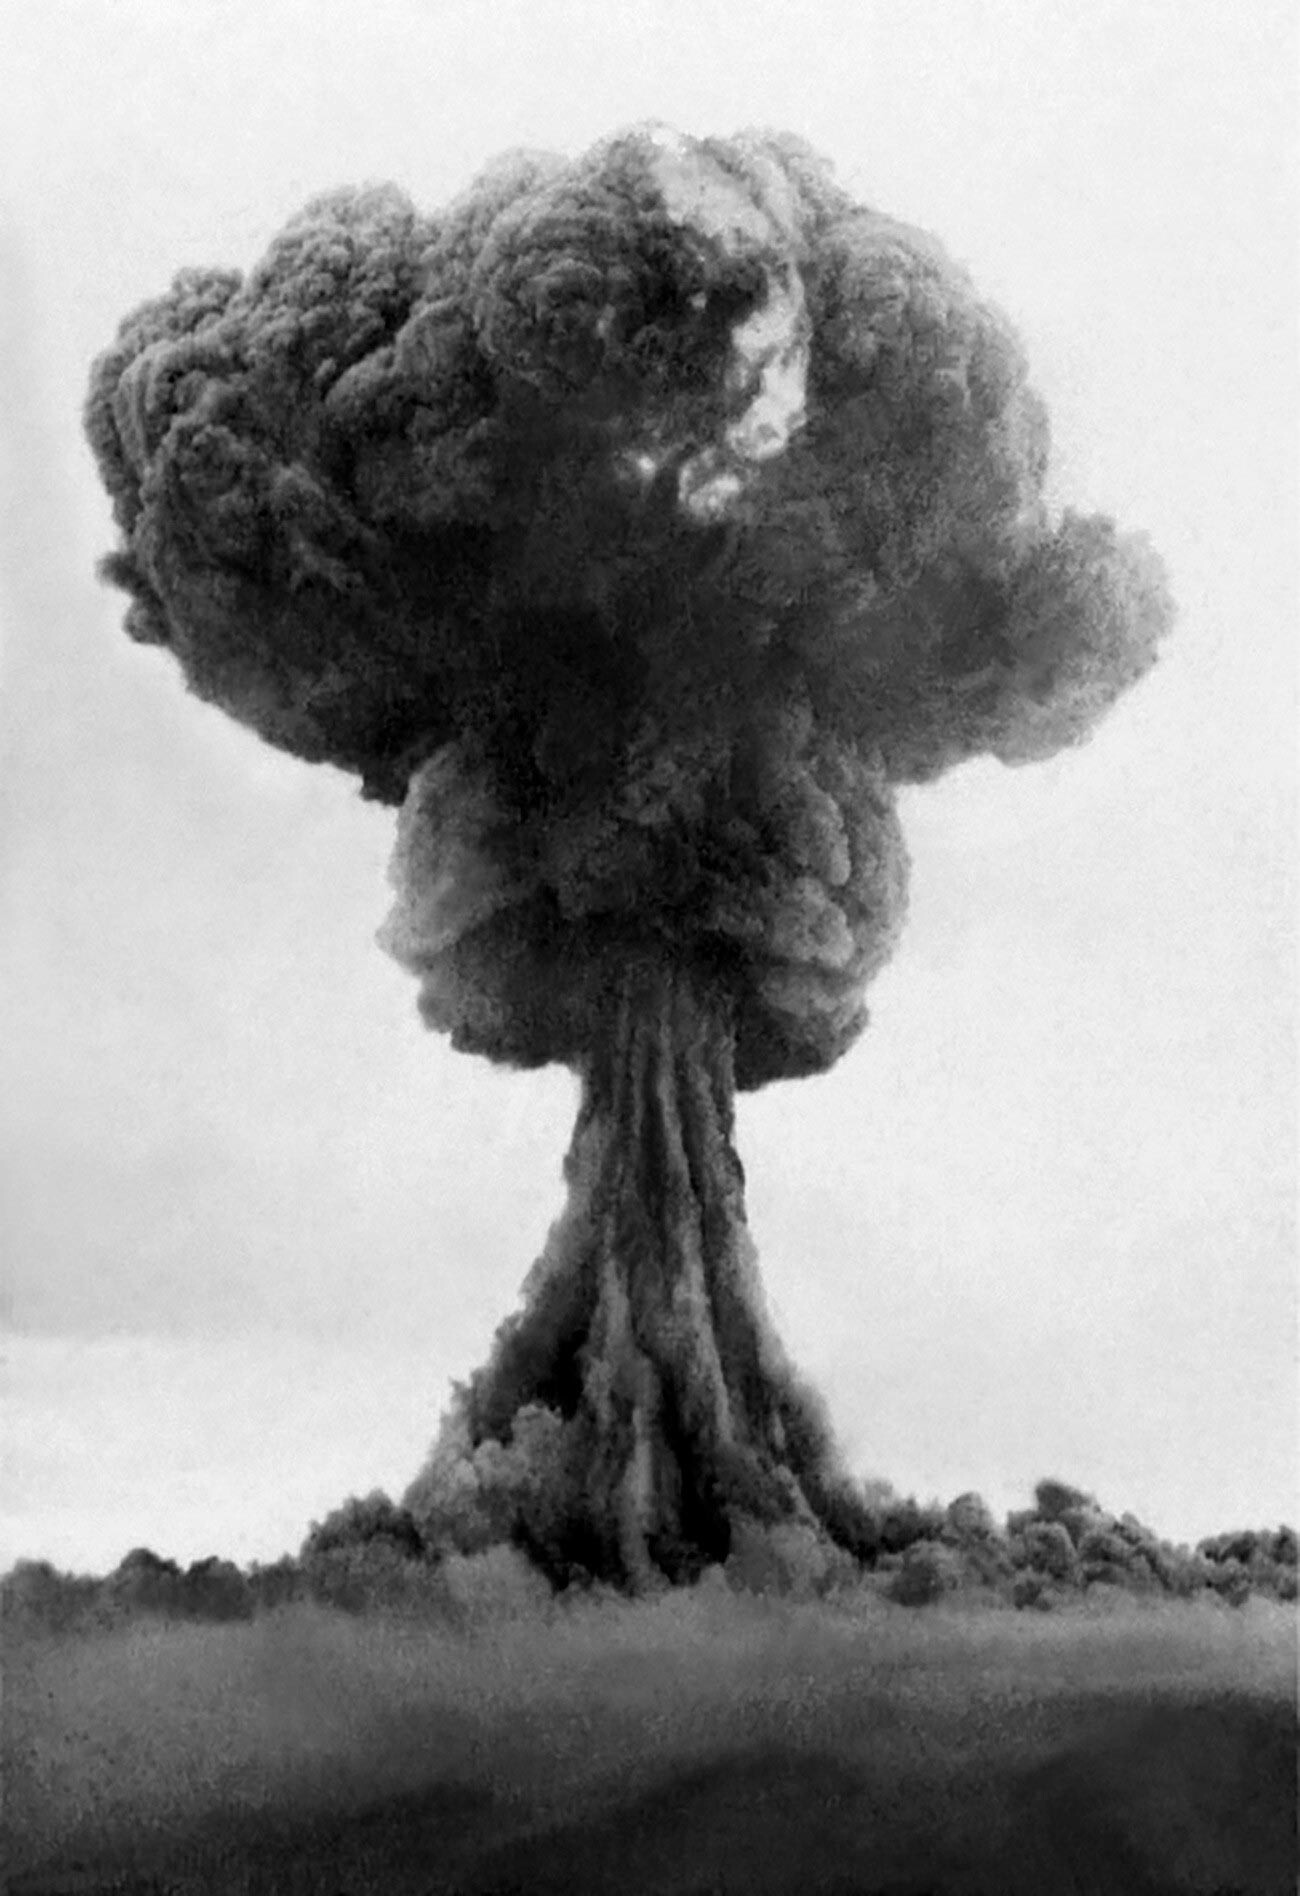 Le champignon atomique après l'explosion de RDS-1, la première bombe nucléaire soviétique, 1949